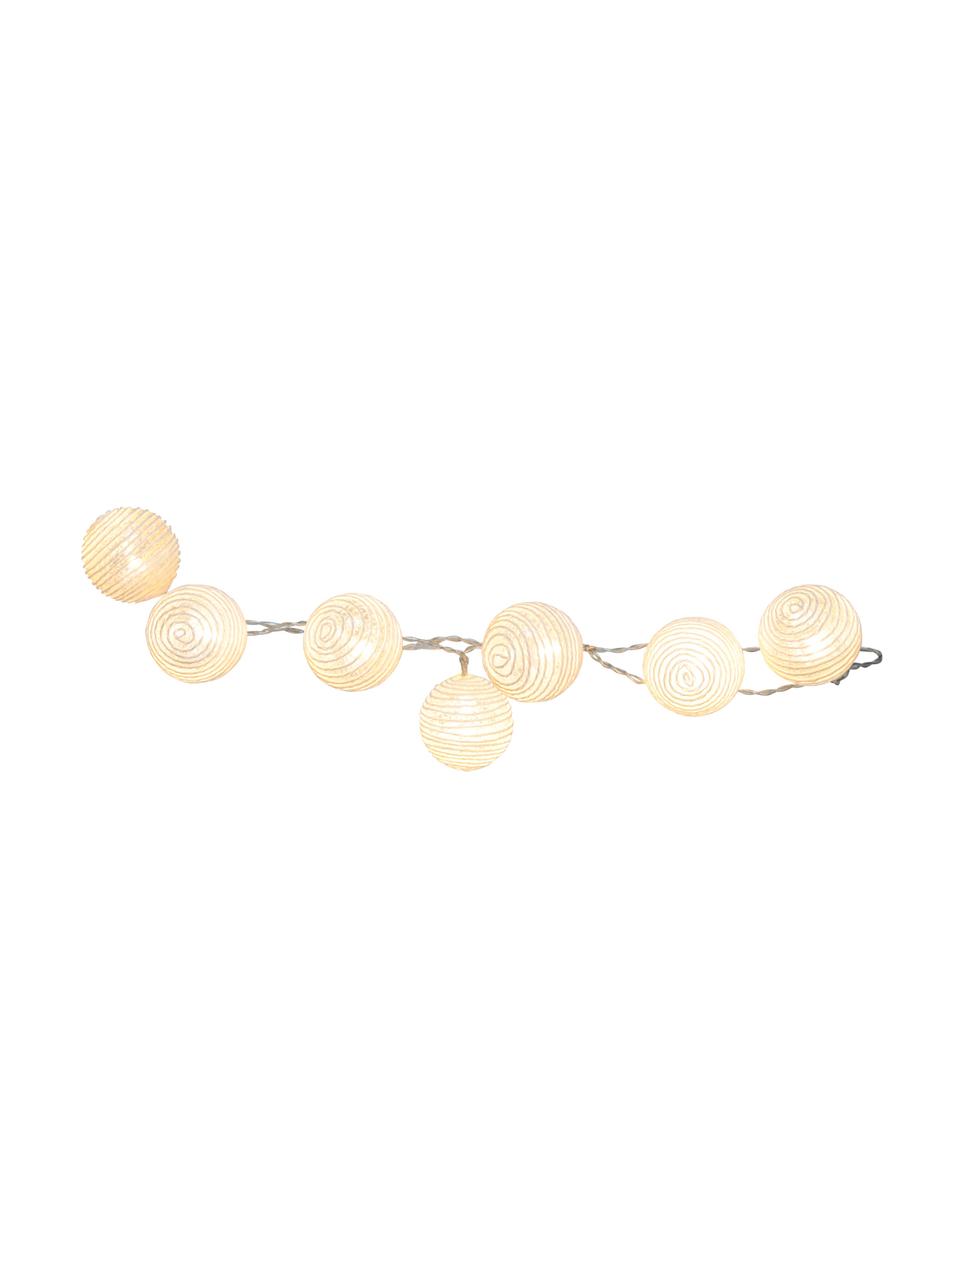 Světelný LED řetěz Yarn, 135 cm, Bílá